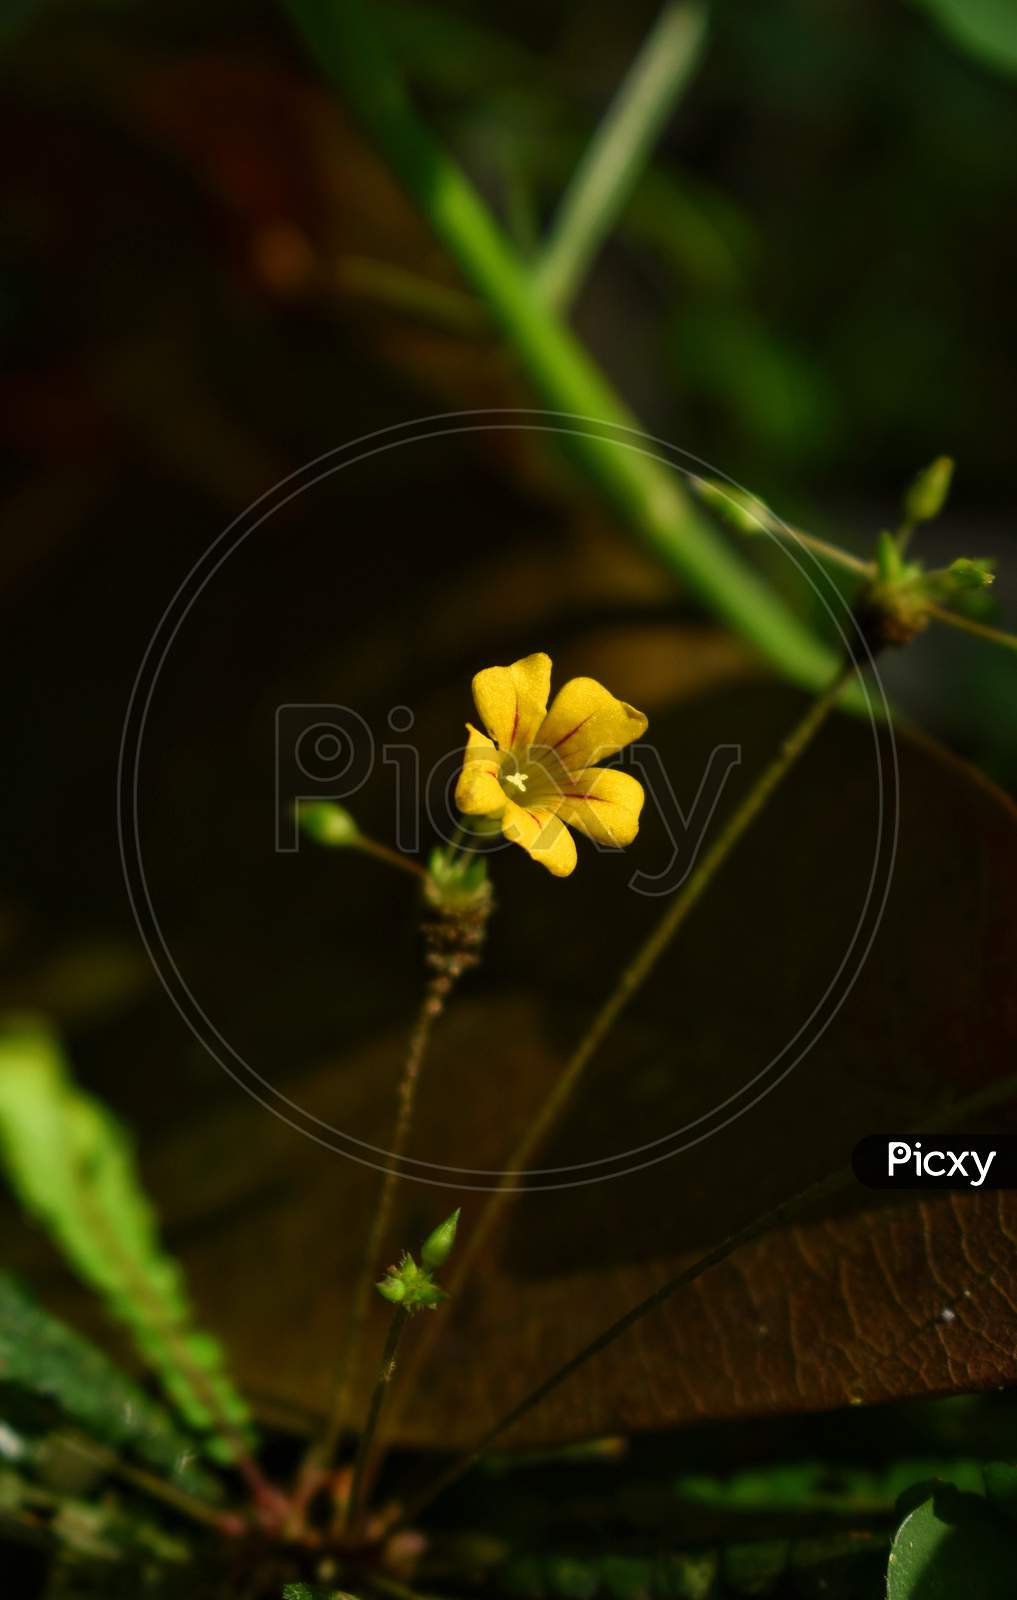 Biophytum sensitivum , Yellow flower